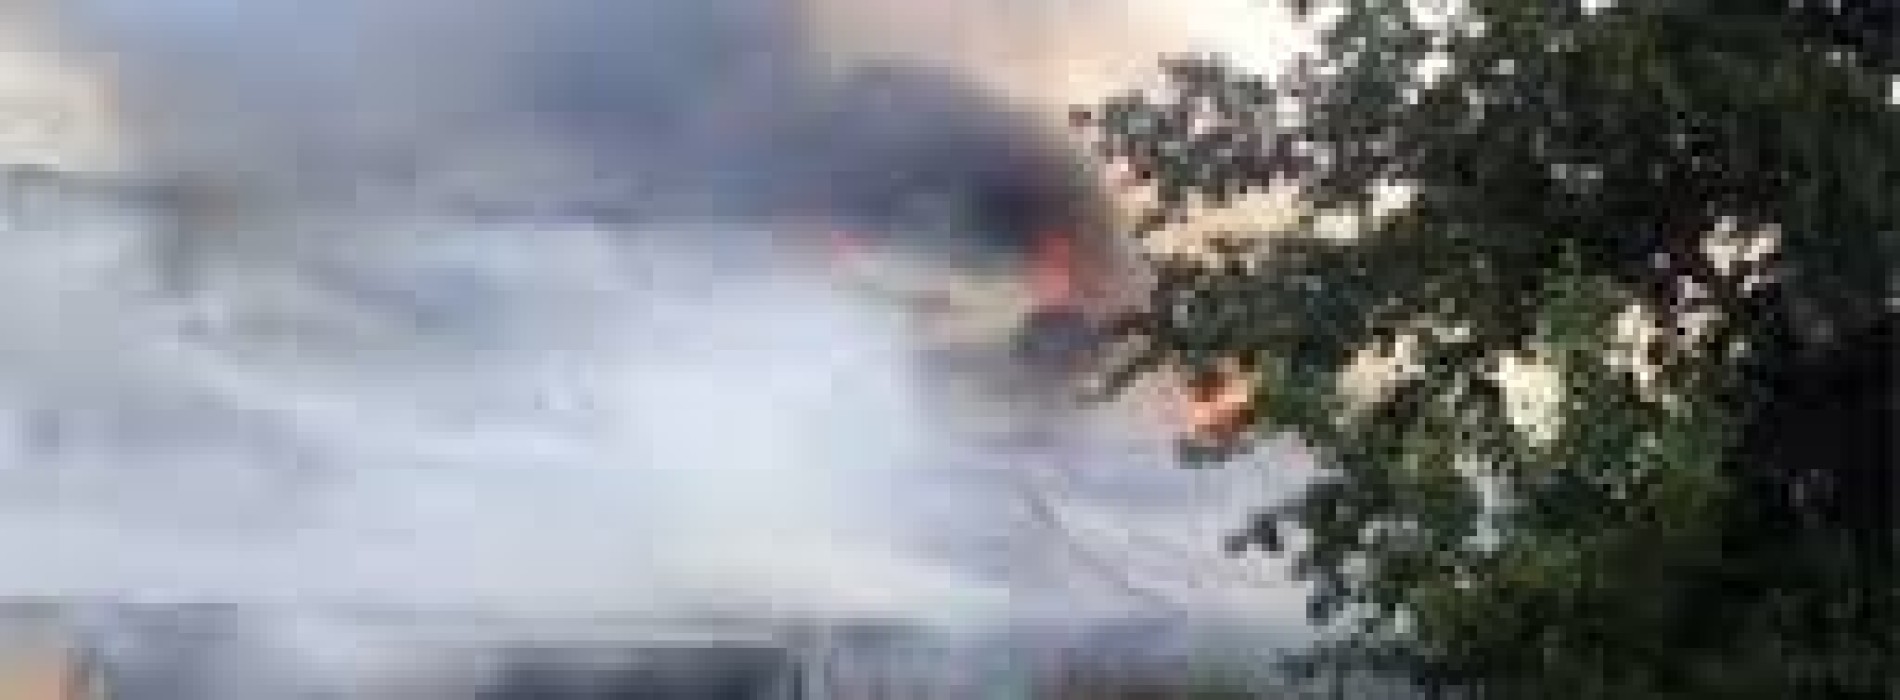 Два кафе сгорели в Шымкенте утром  